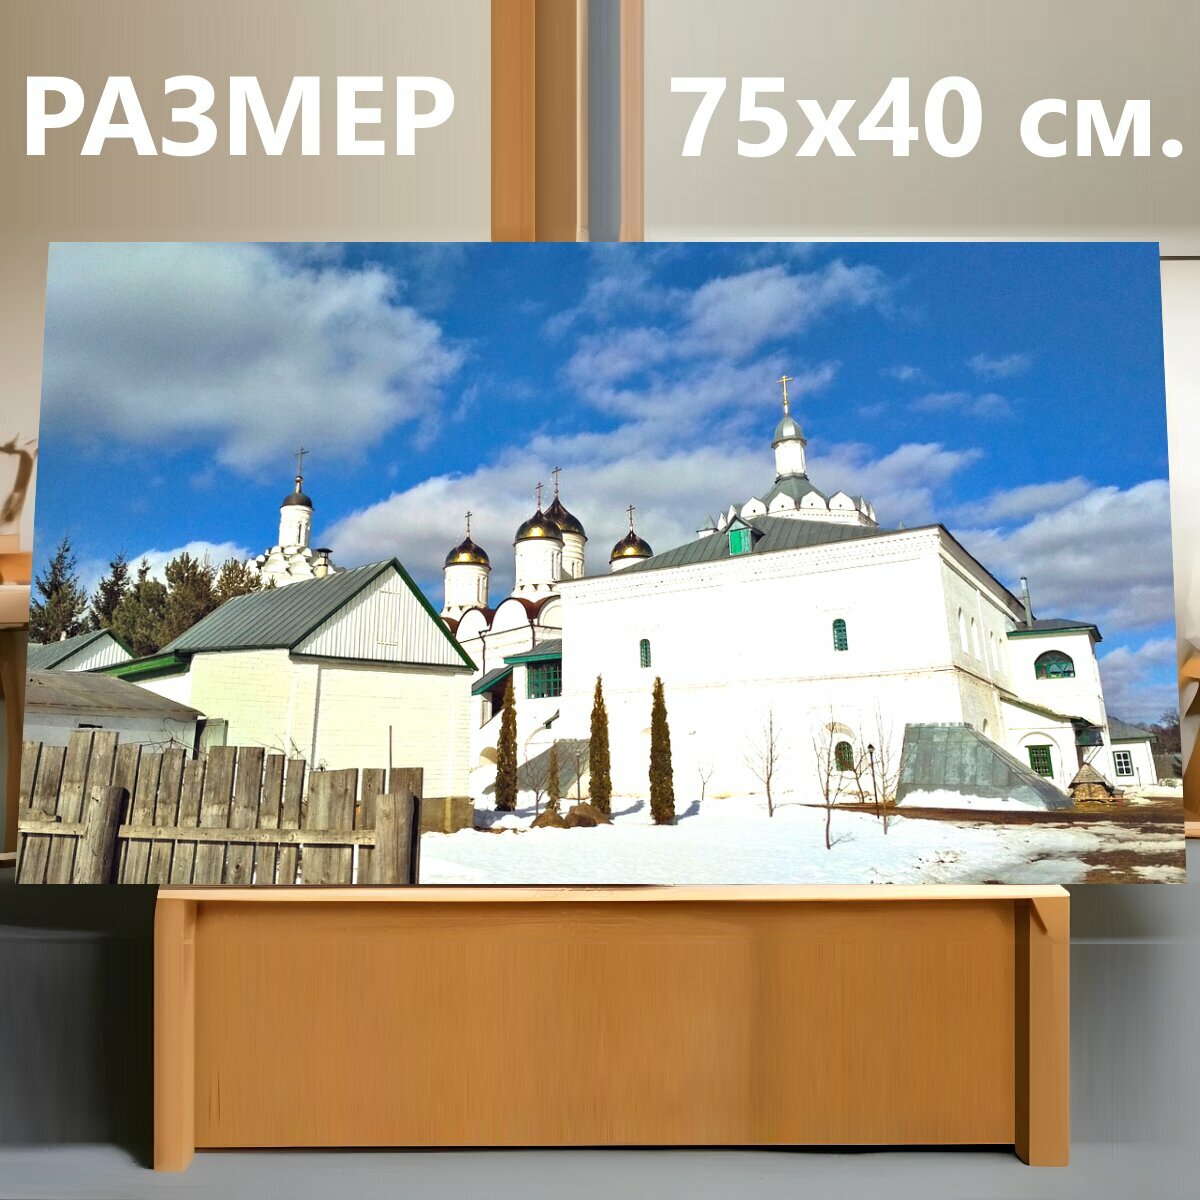 Картина на холсте "Монастырь, церковь, храм" на подрамнике 75х40 см. для интерьера